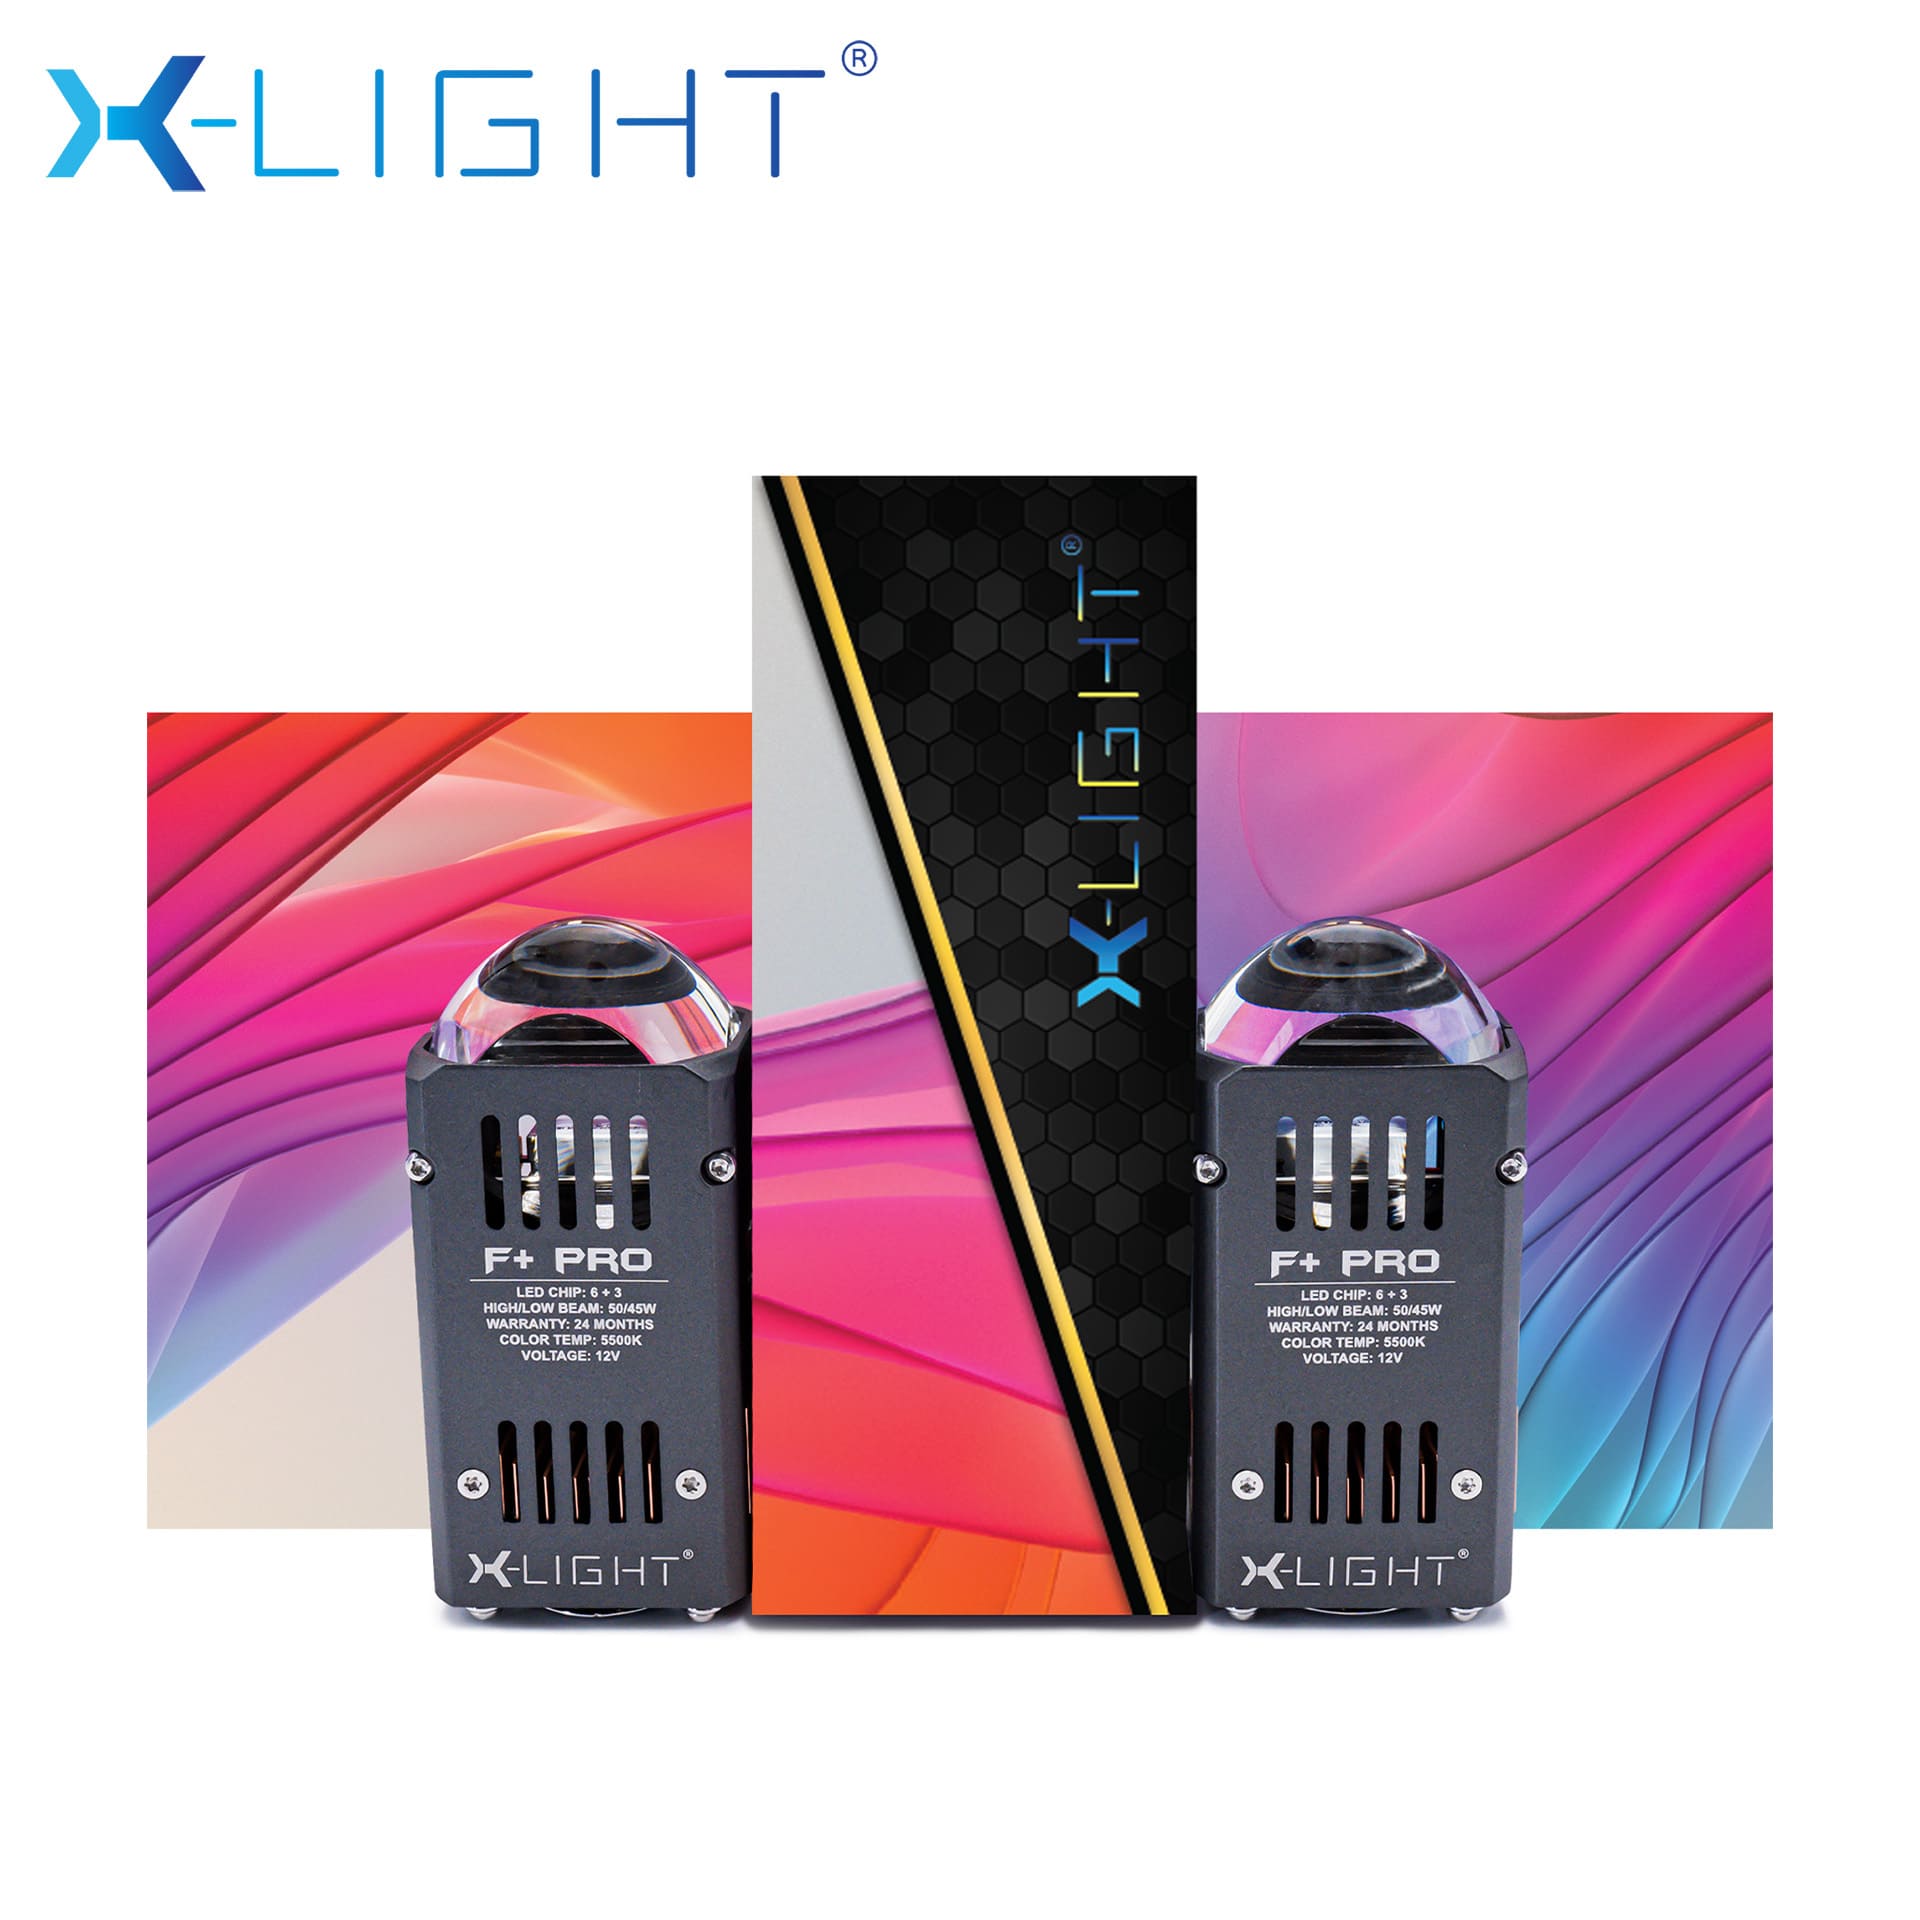 MODULE BI LED MINI X-LIGHT F+ PRO 5500K